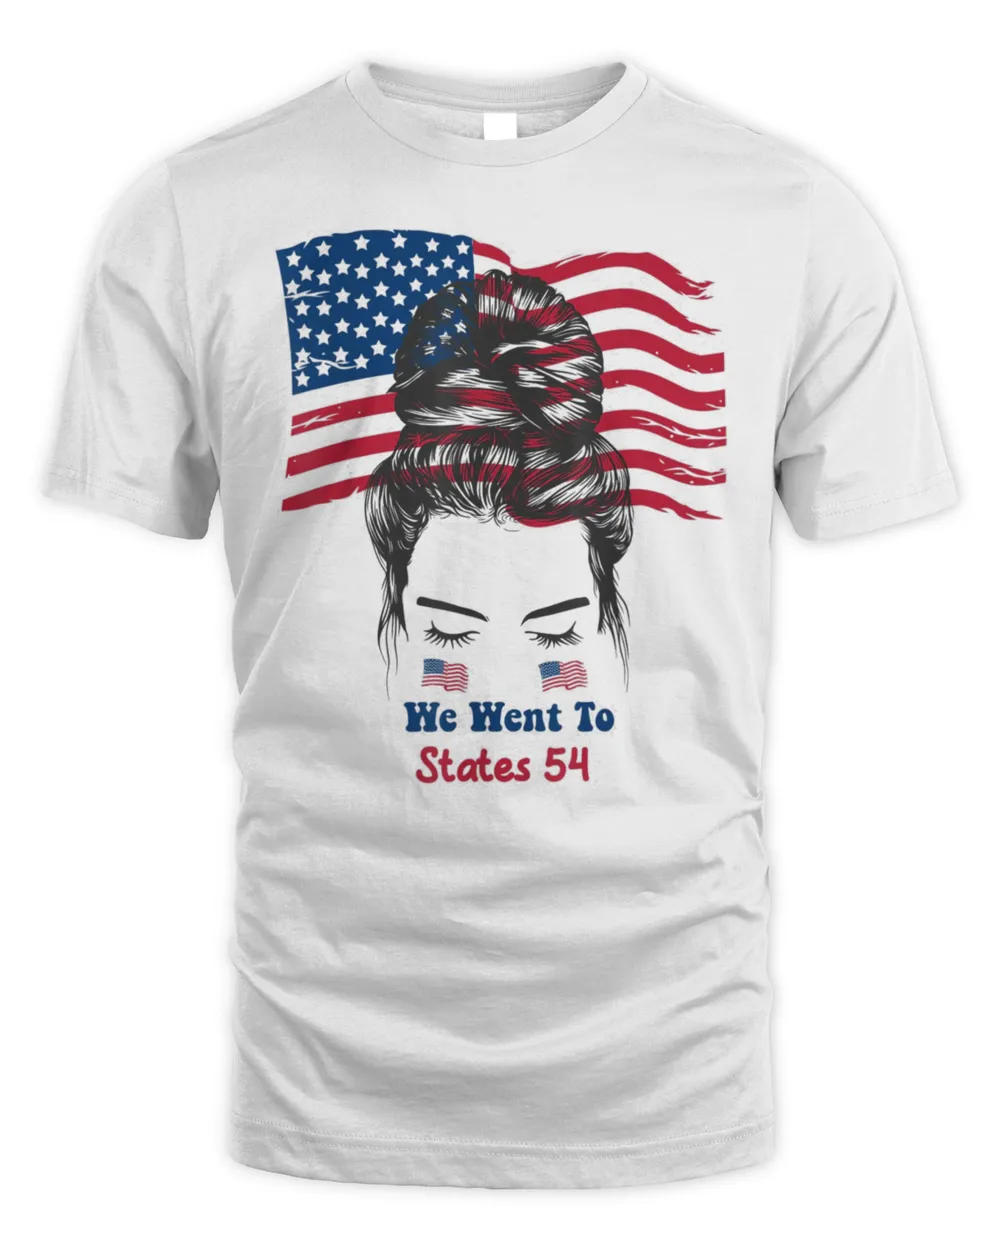 Messy Bun American Flag We Went To 54 States, Biden T-Shirt